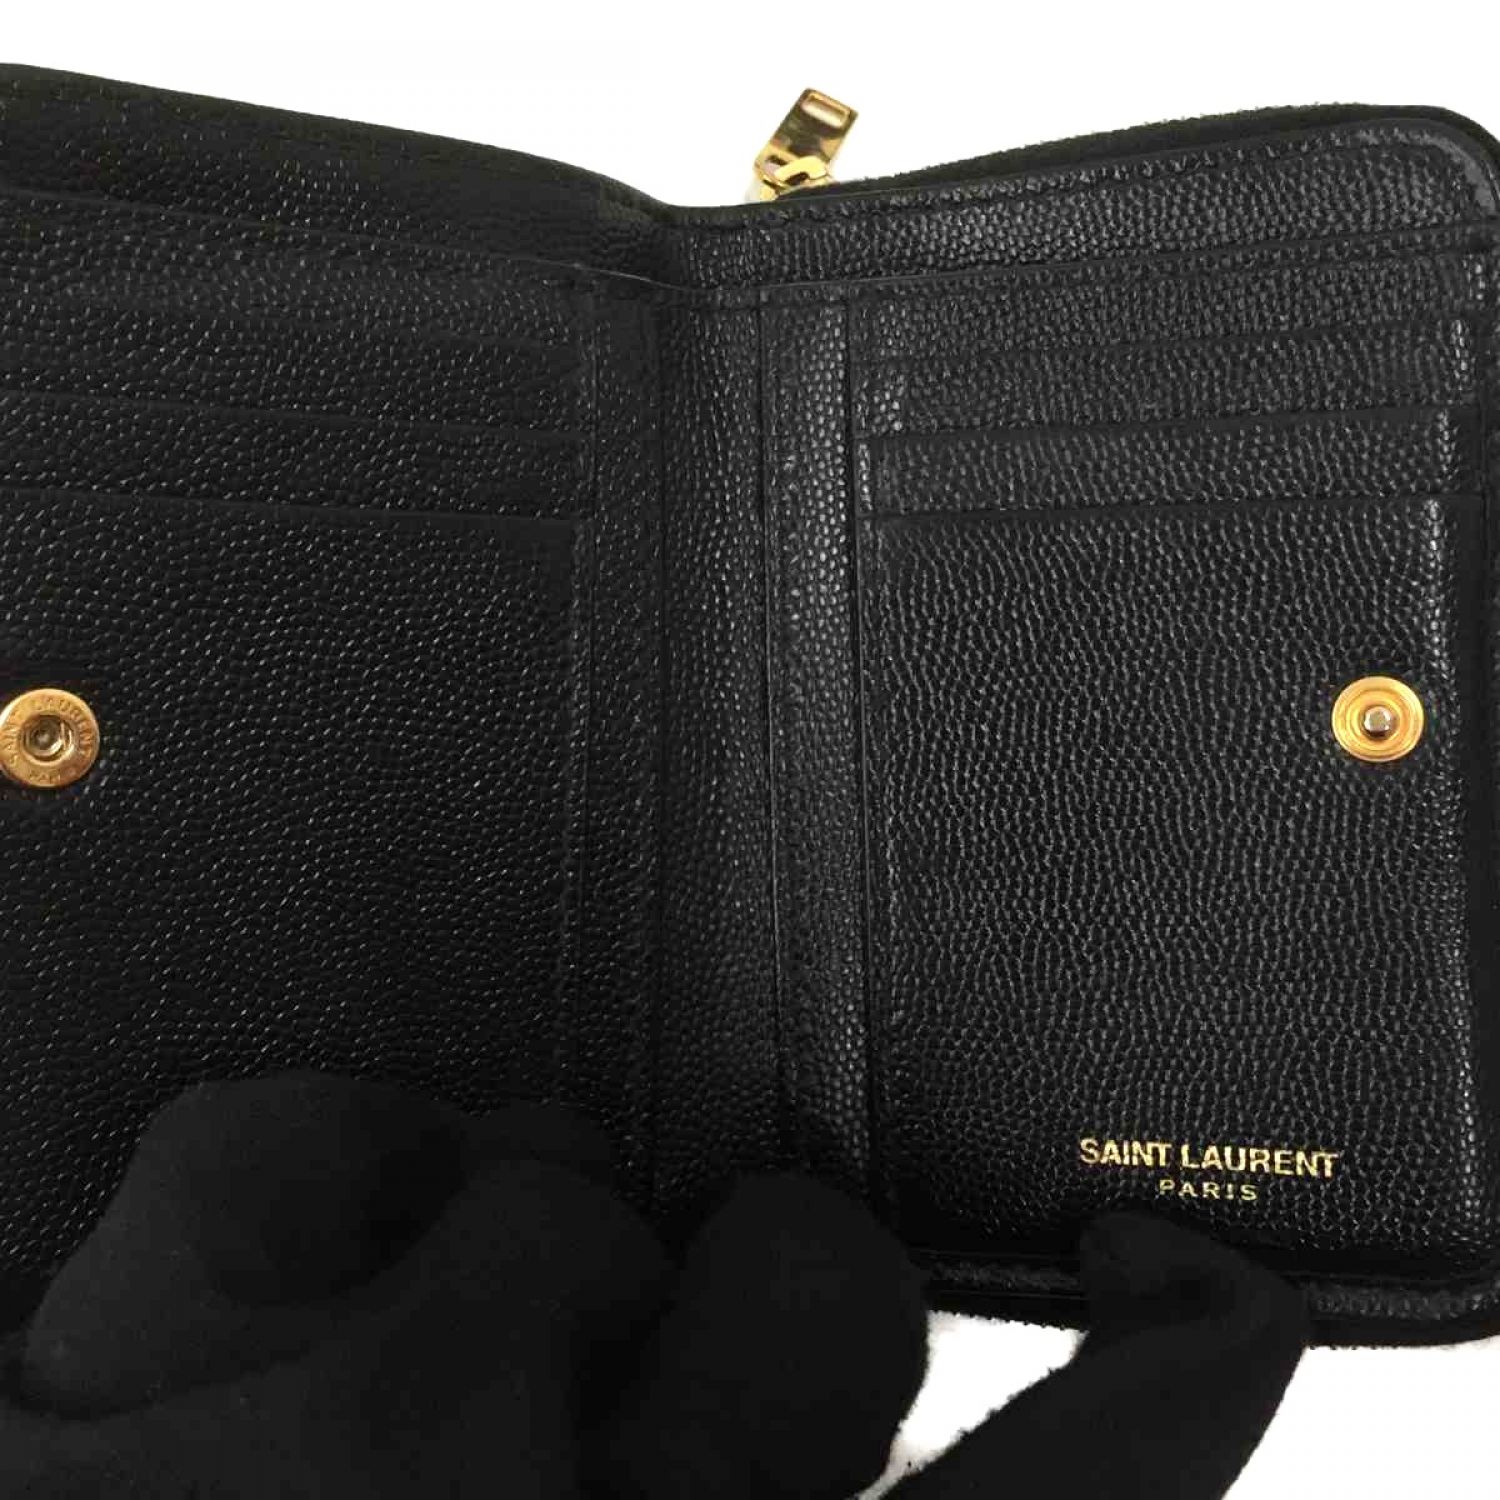 新品未使用品 SAINT LAURENT 手のひらサイズのミニ財布 ブラック